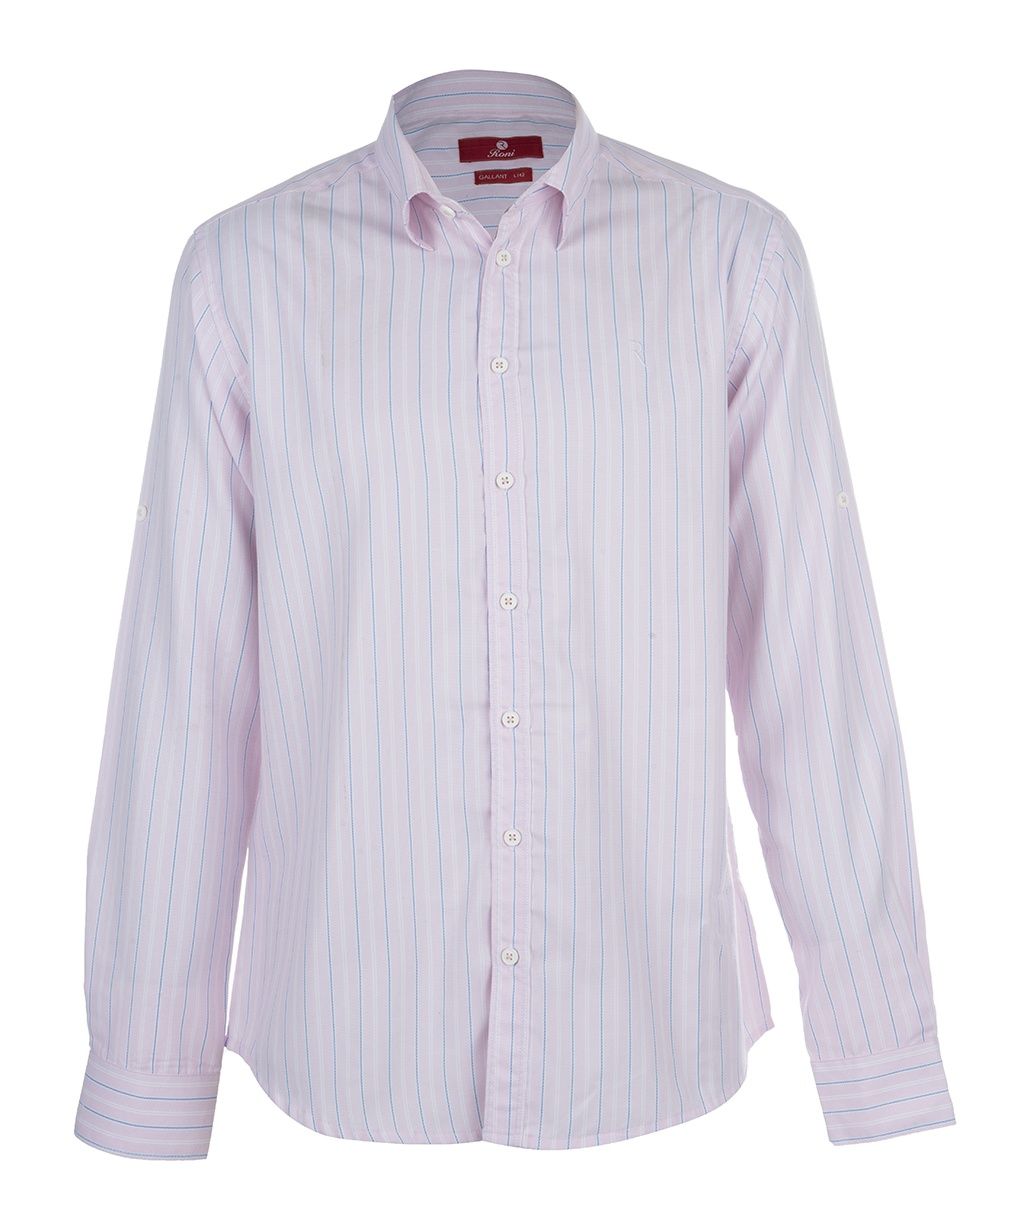 پیراهن مردانه رونی مدل 1122015215-84 -  - 1